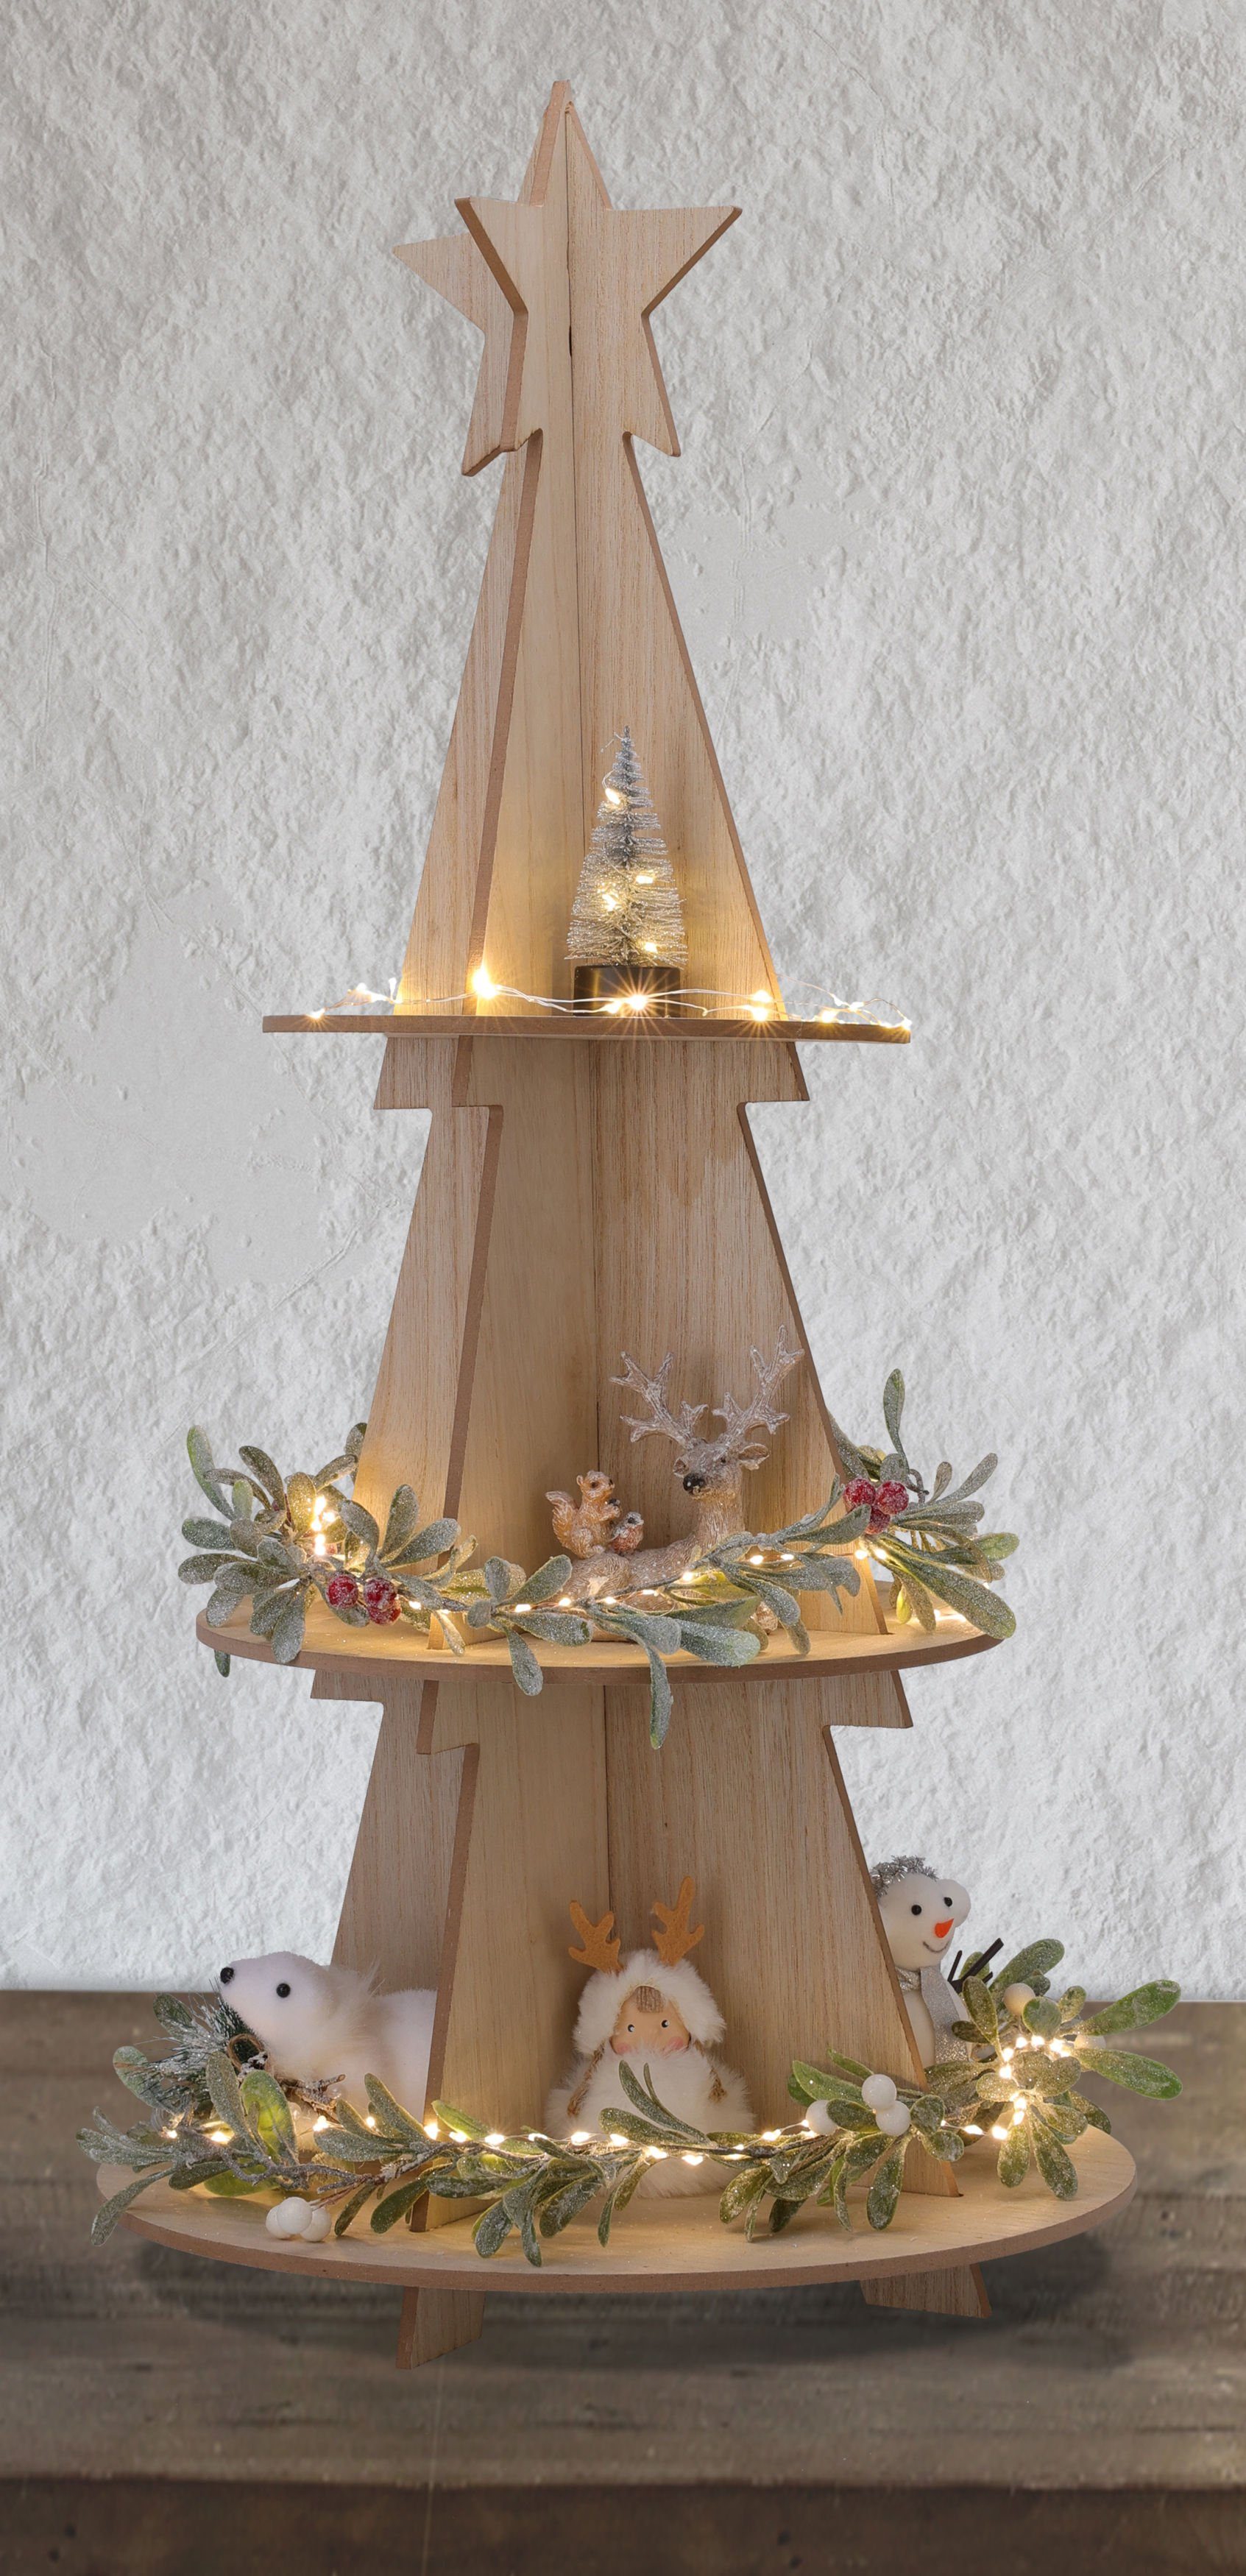 Weihnachtspyramide Deko 60cm Etagere Stern mit Weihnachts Etagen, XXL mit Spetebo Weihnachtsbaum Holz Pyramide Spitze 3